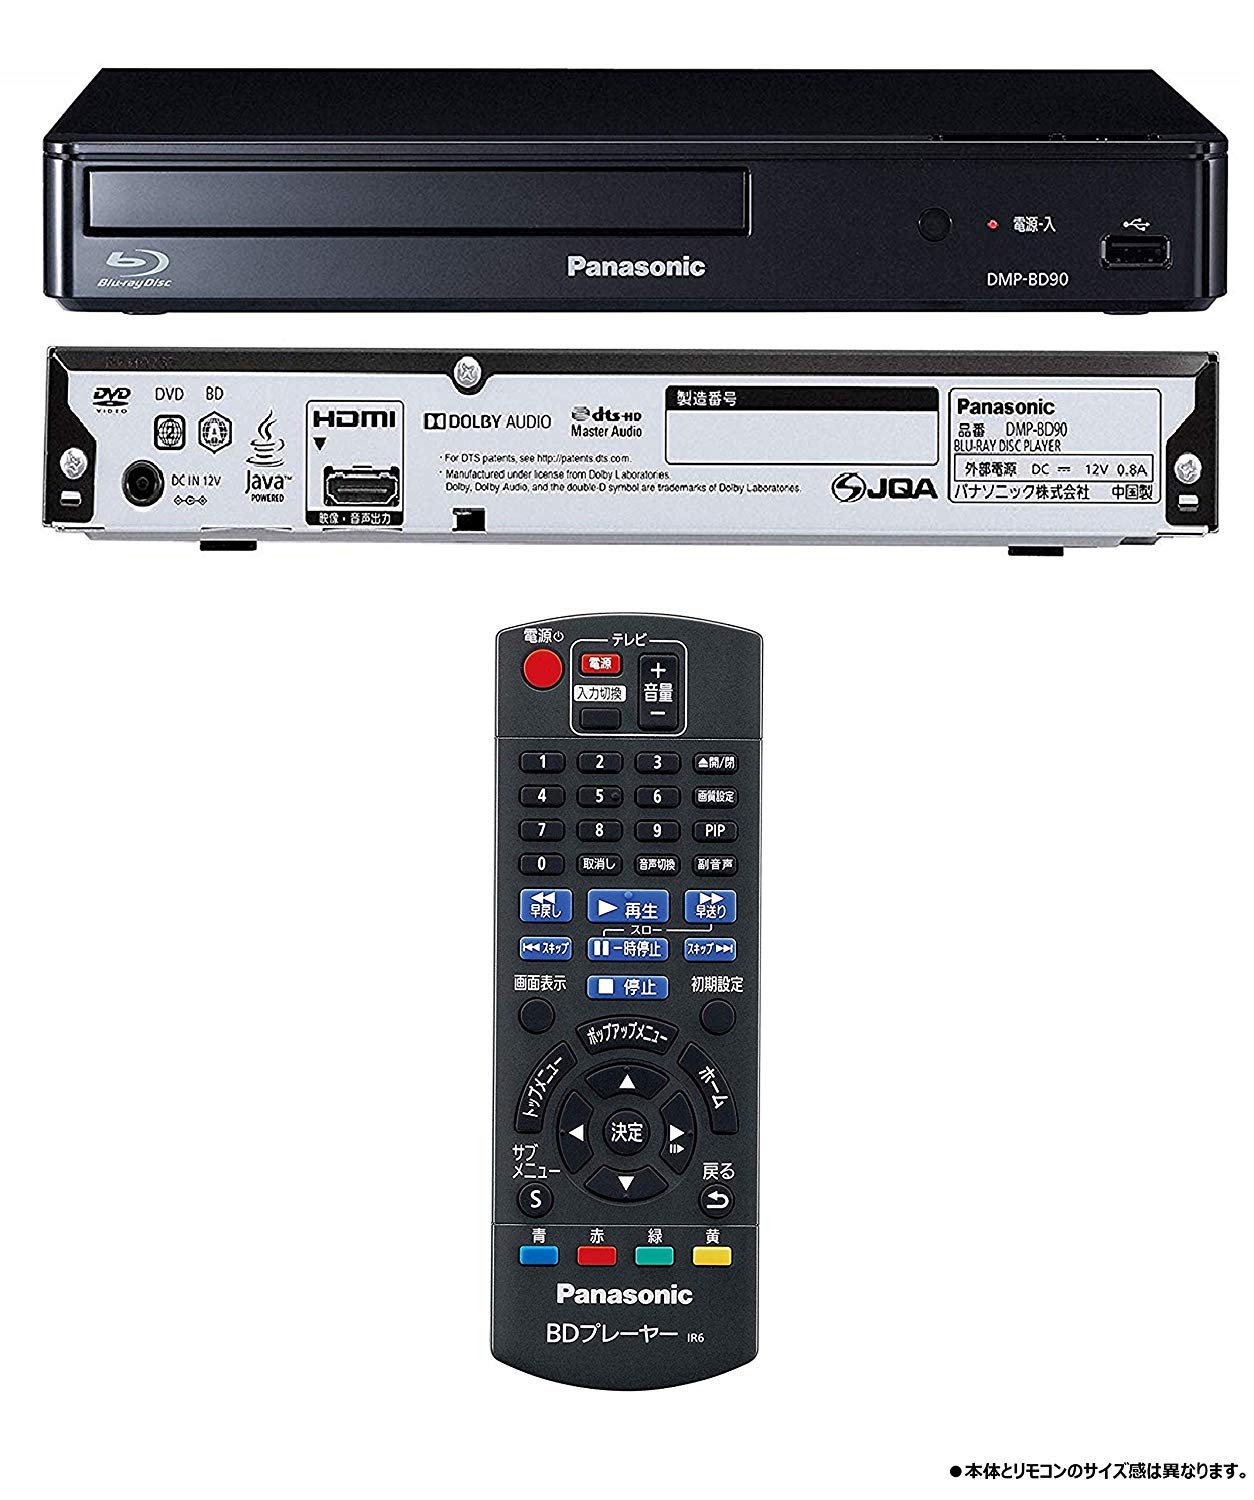 6907円 日本最級 パナソニックBluray DVD光学レーザピックアップ3460A用オリジナルの新しい3460A Panasonic DMP-BD30 DMP BD30 DVD光学レーザピックアップ